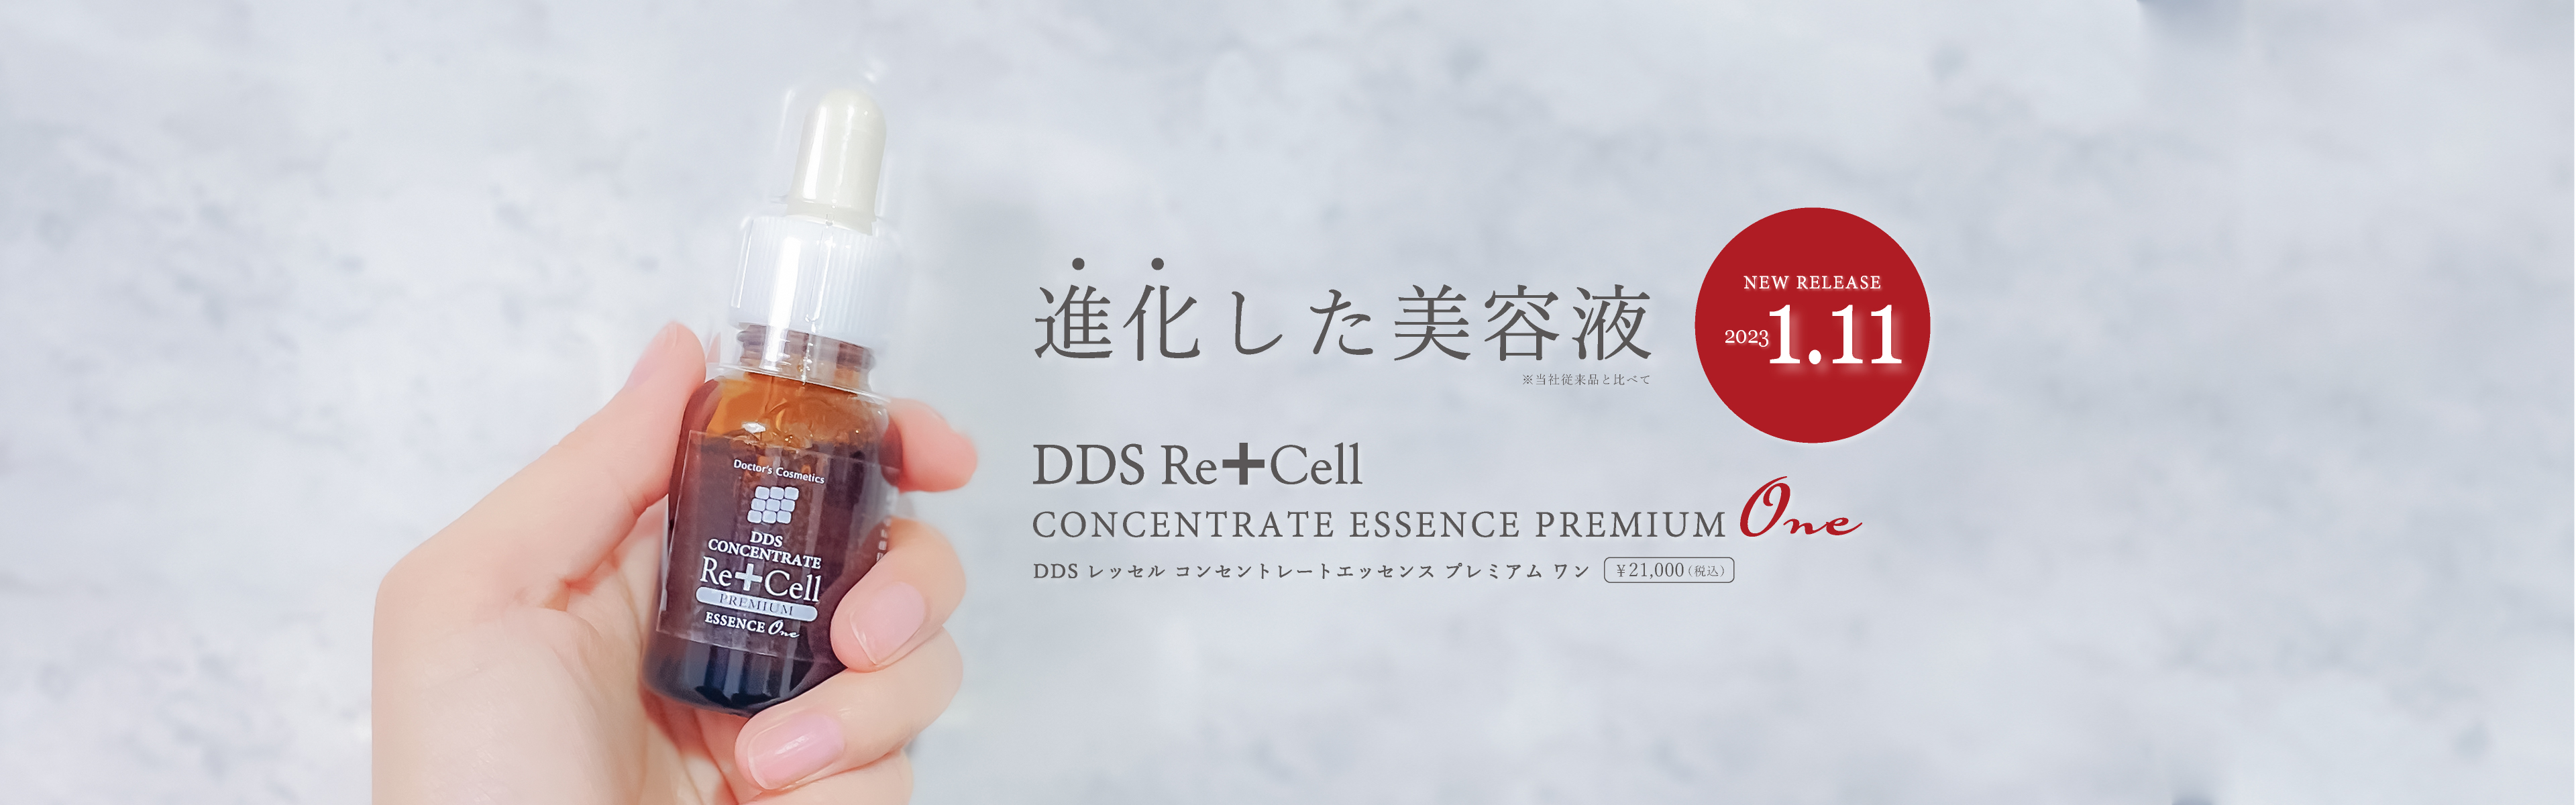 DDSレッセルPMDDSコンセントレートエッセンスOne - 美容液